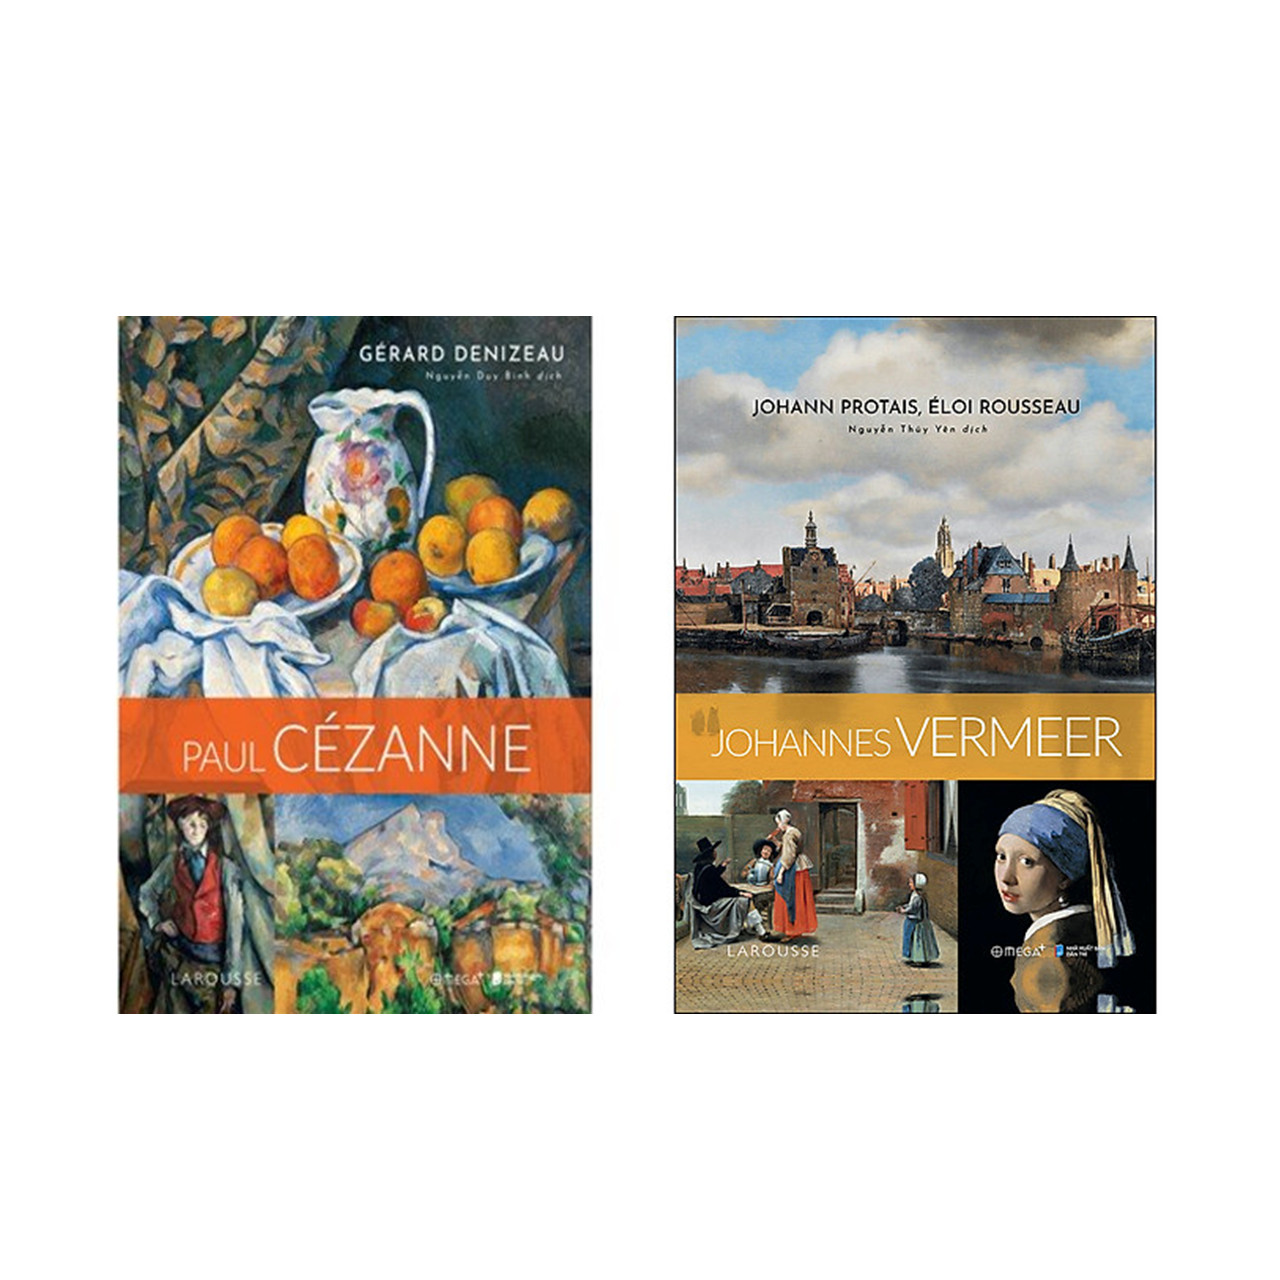 Trạm Đọc Official | Combo Danh Họa Thế Giới: Paul Cézanne - Con Người Sơ Khai Của Nghệ Thuật Mới + Johannes Vermeer - Thời Kỳ Hoàng Kim Của Hội Họa Hà Lan